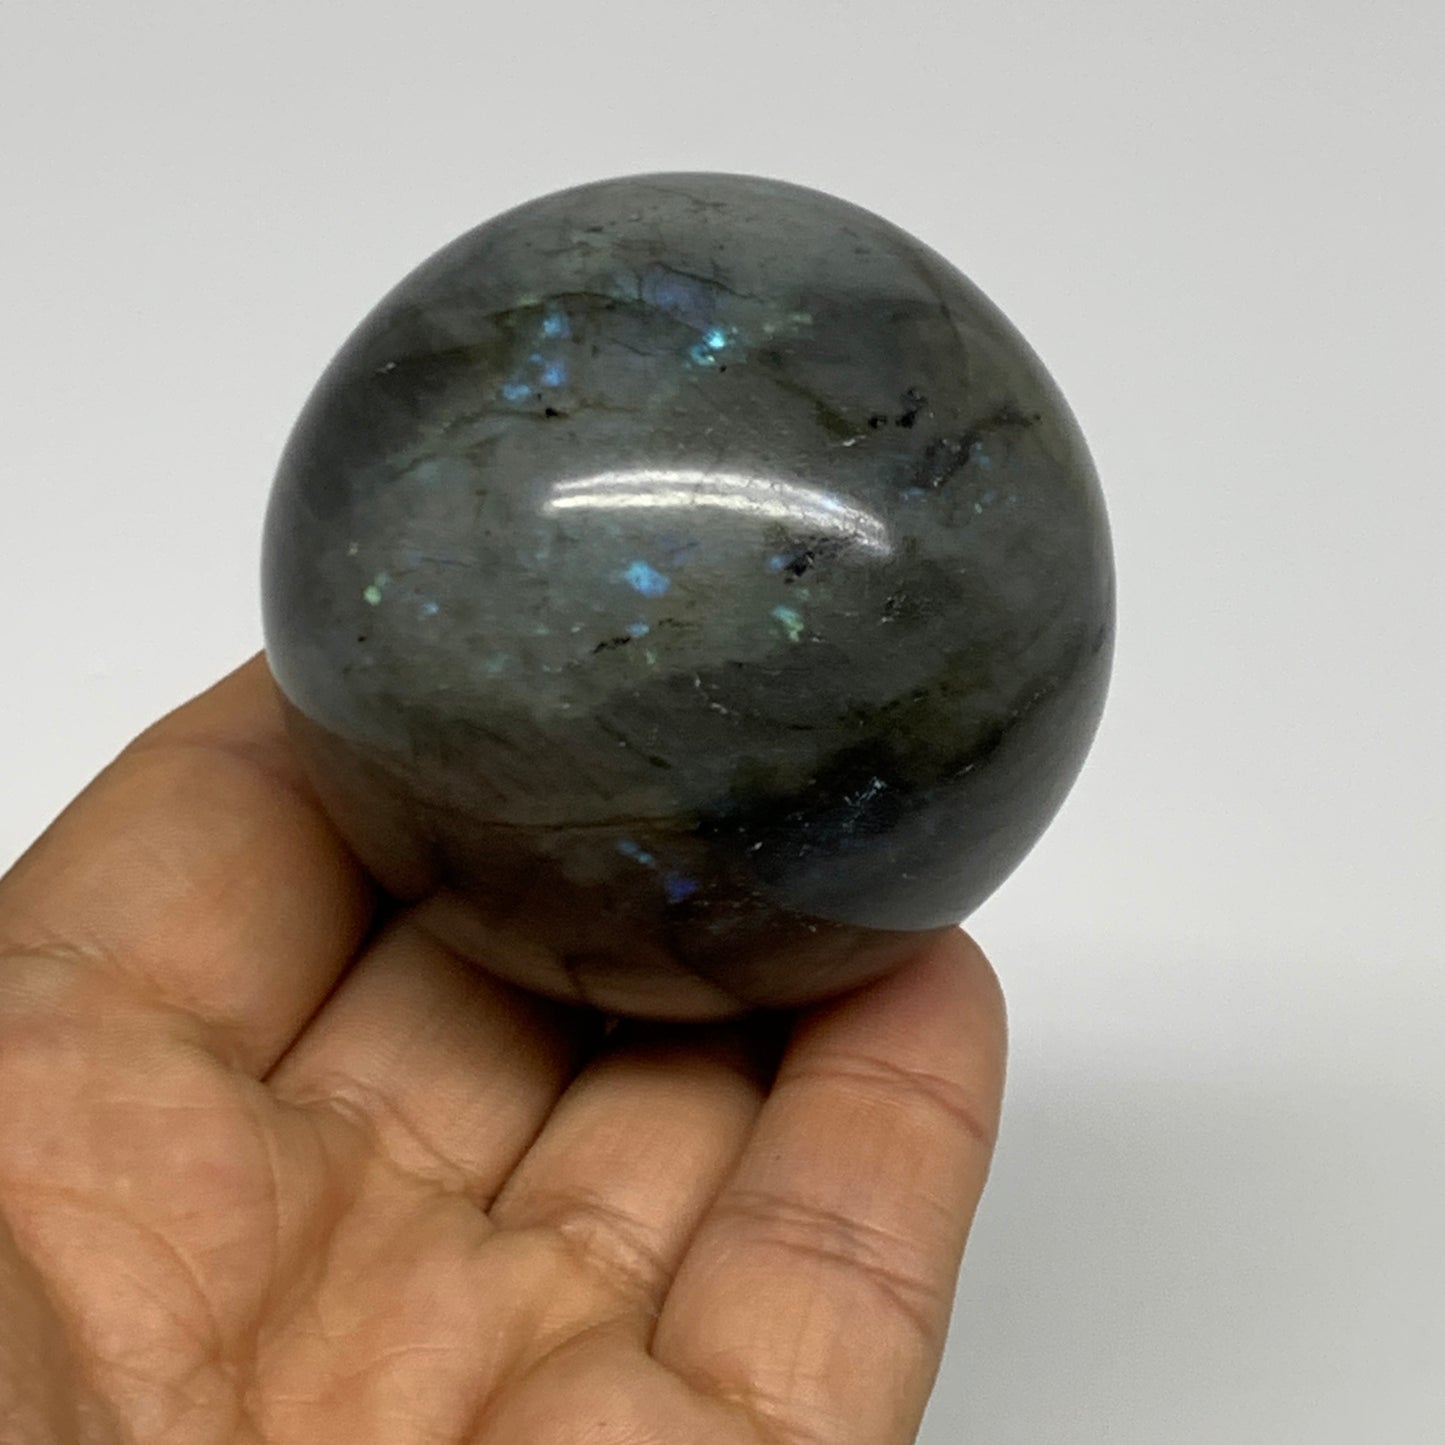 2.5 lbs (1133g), 2" - 2.2", 5pcs, Labradorite Spheres Gemstones, B29848